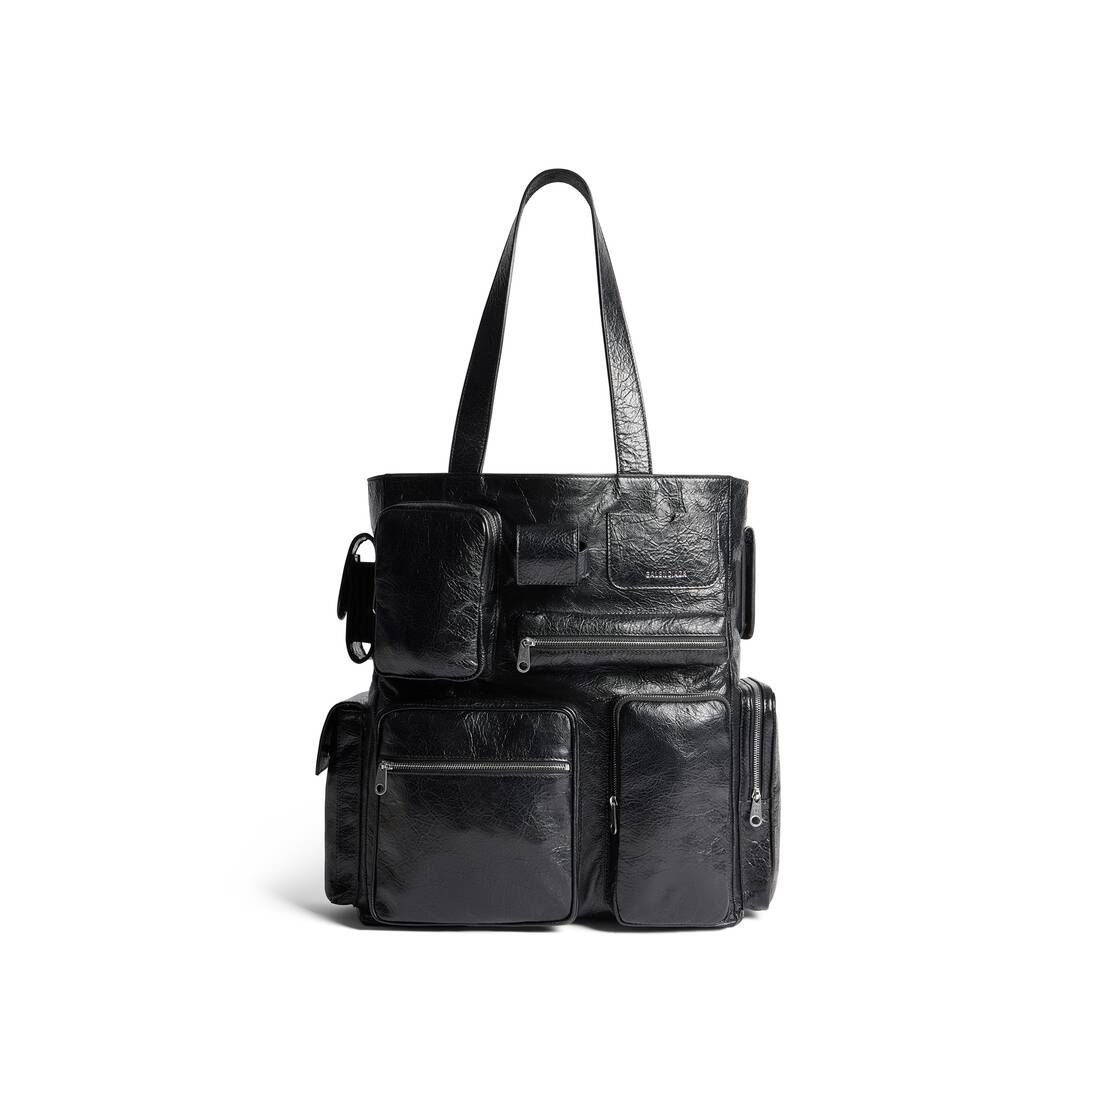 Men's Superbusy Tote Bag in Black - 1